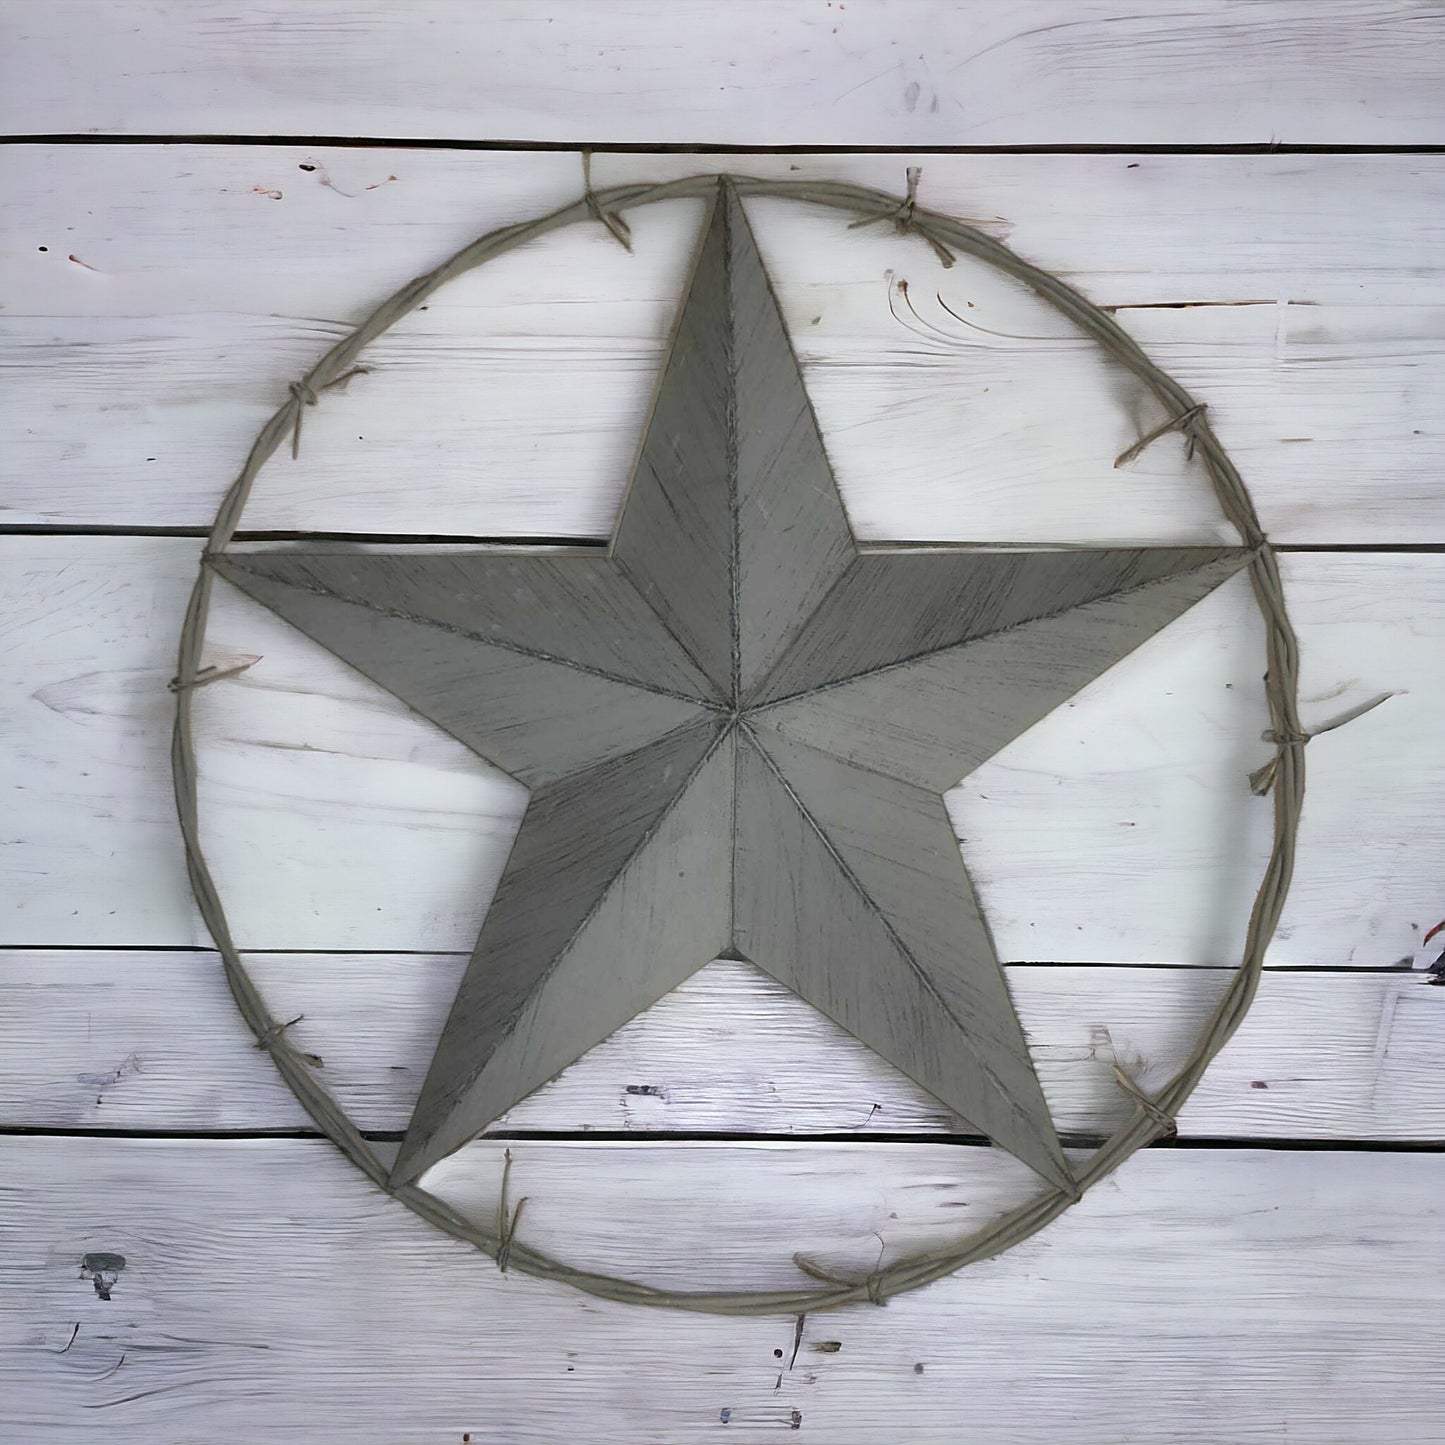 Lone Star, Texas Star, Barb Wire, Barn Star